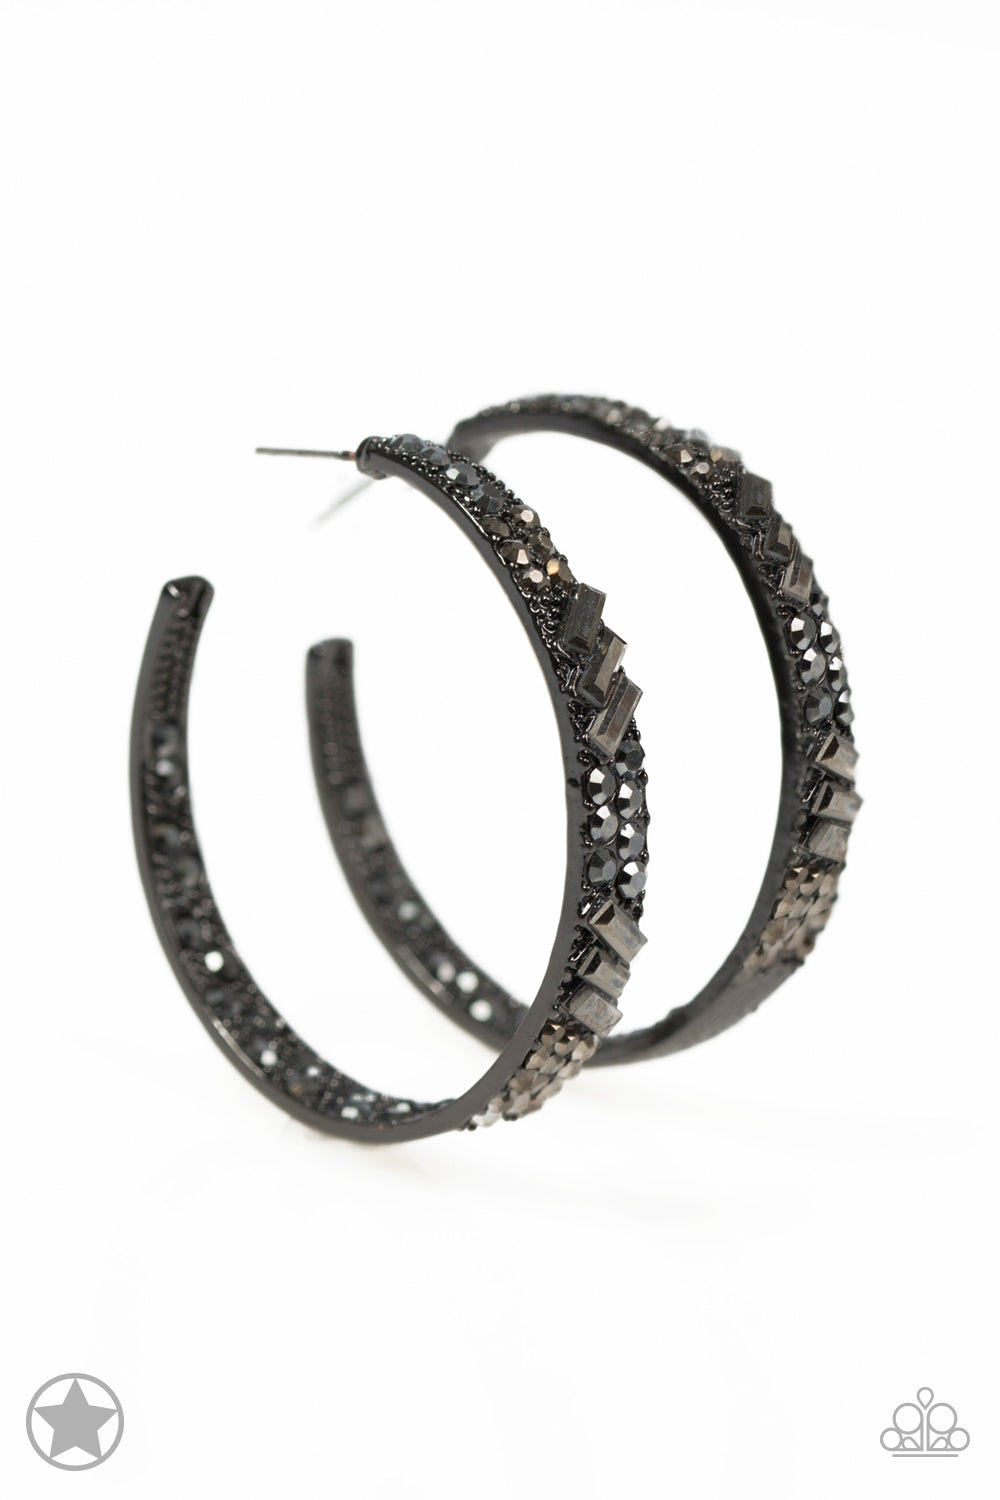 GLITZY By Association - Black/Gunmetal hoop earrings